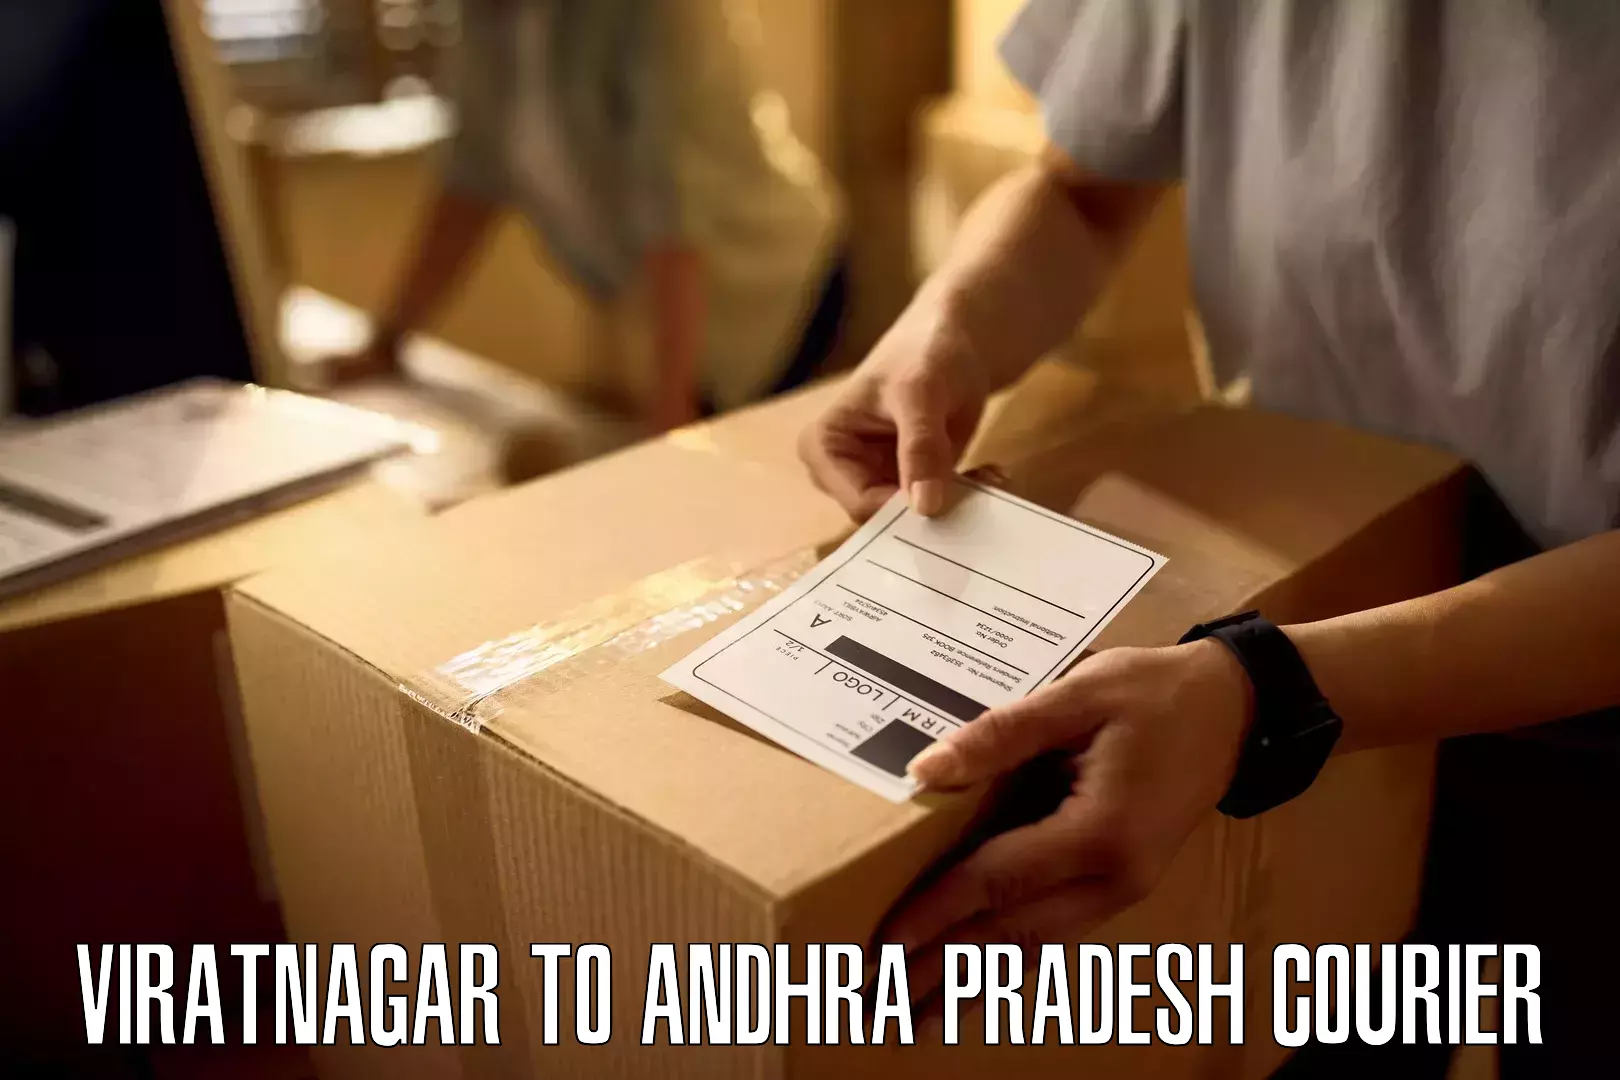 Large package courier Viratnagar to Rajampet